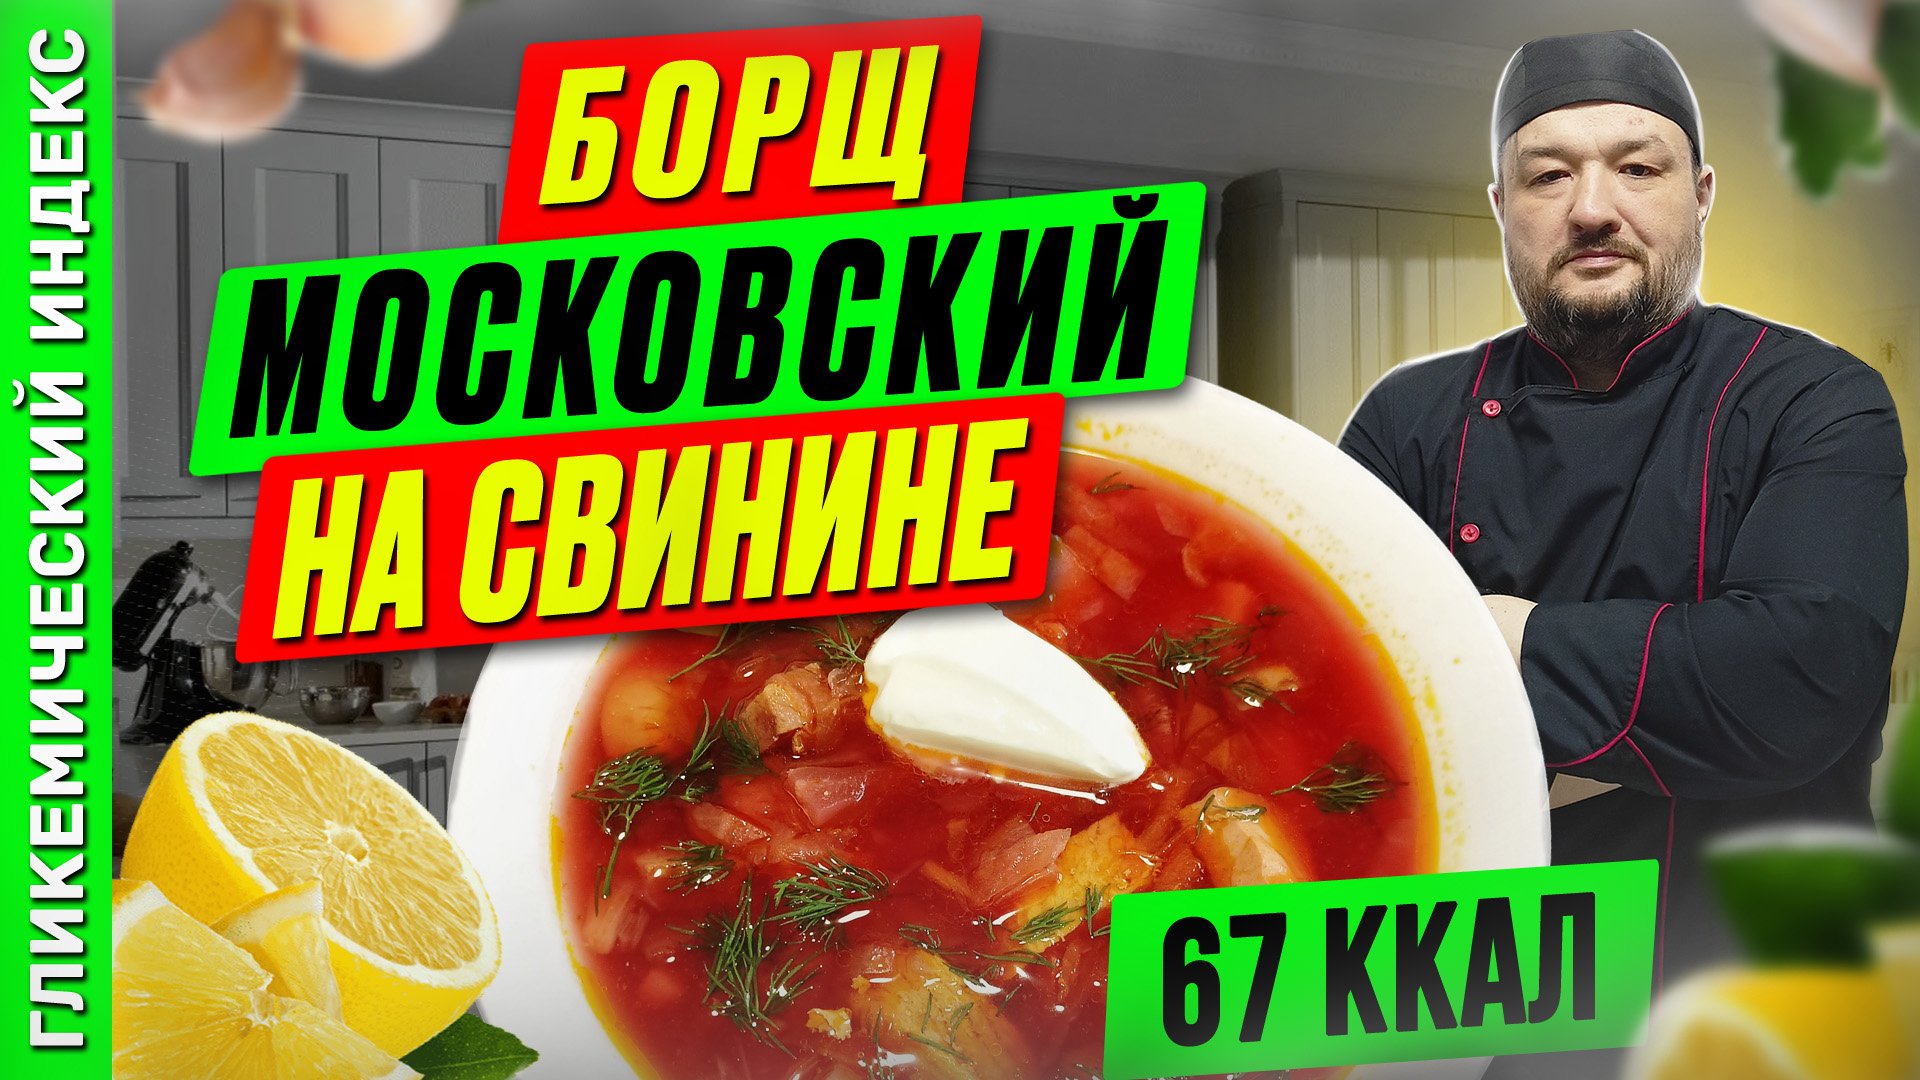 Борщ московский на свинине  — вкусный рецепт первого для мультиварки